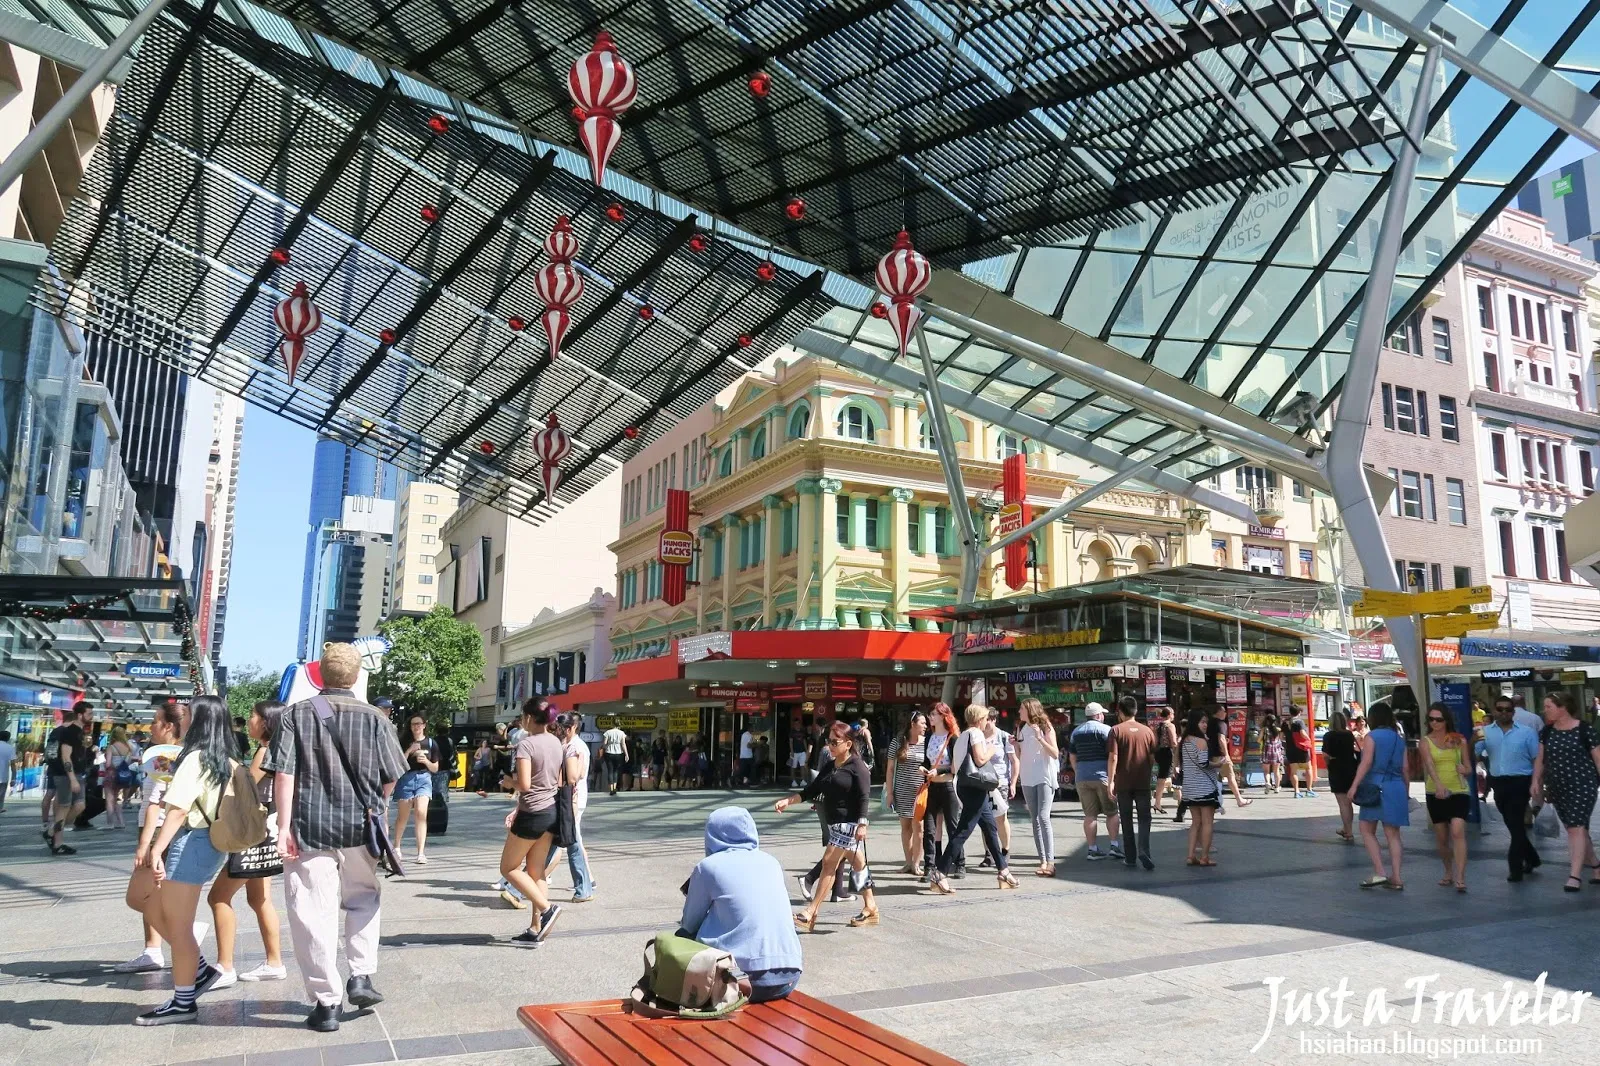 布里斯本-布里斯本景點-推薦-皇后街-旅遊-布里斯本觀光景點-自由行-Brisbane-Attraction-Queen-Street-Shopping-Mall-Tourist-destination